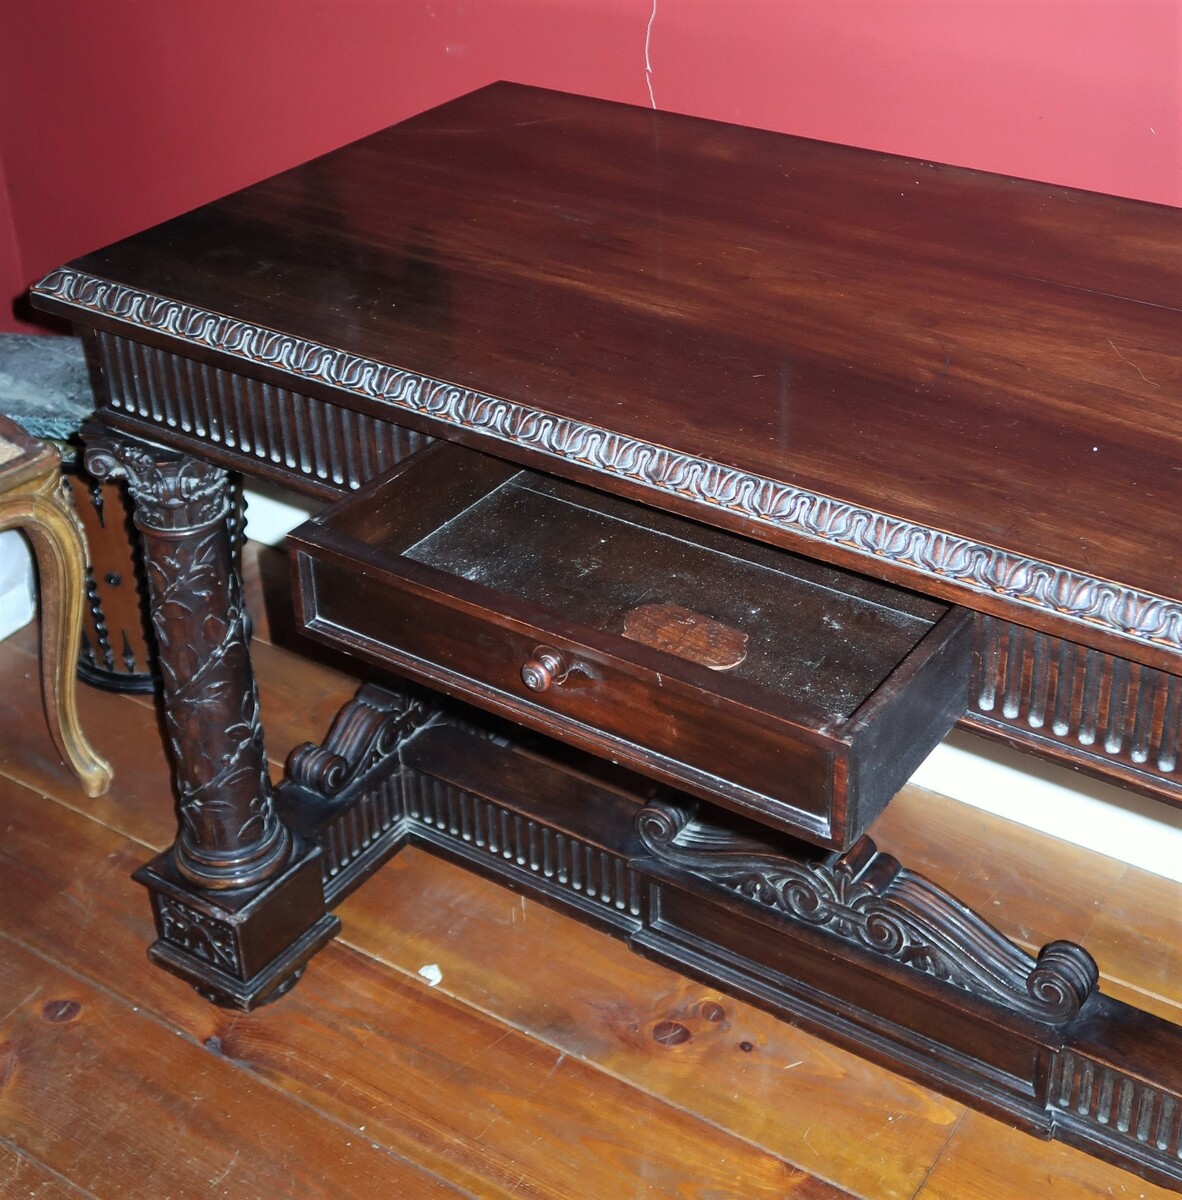 Italian Renaissance style table